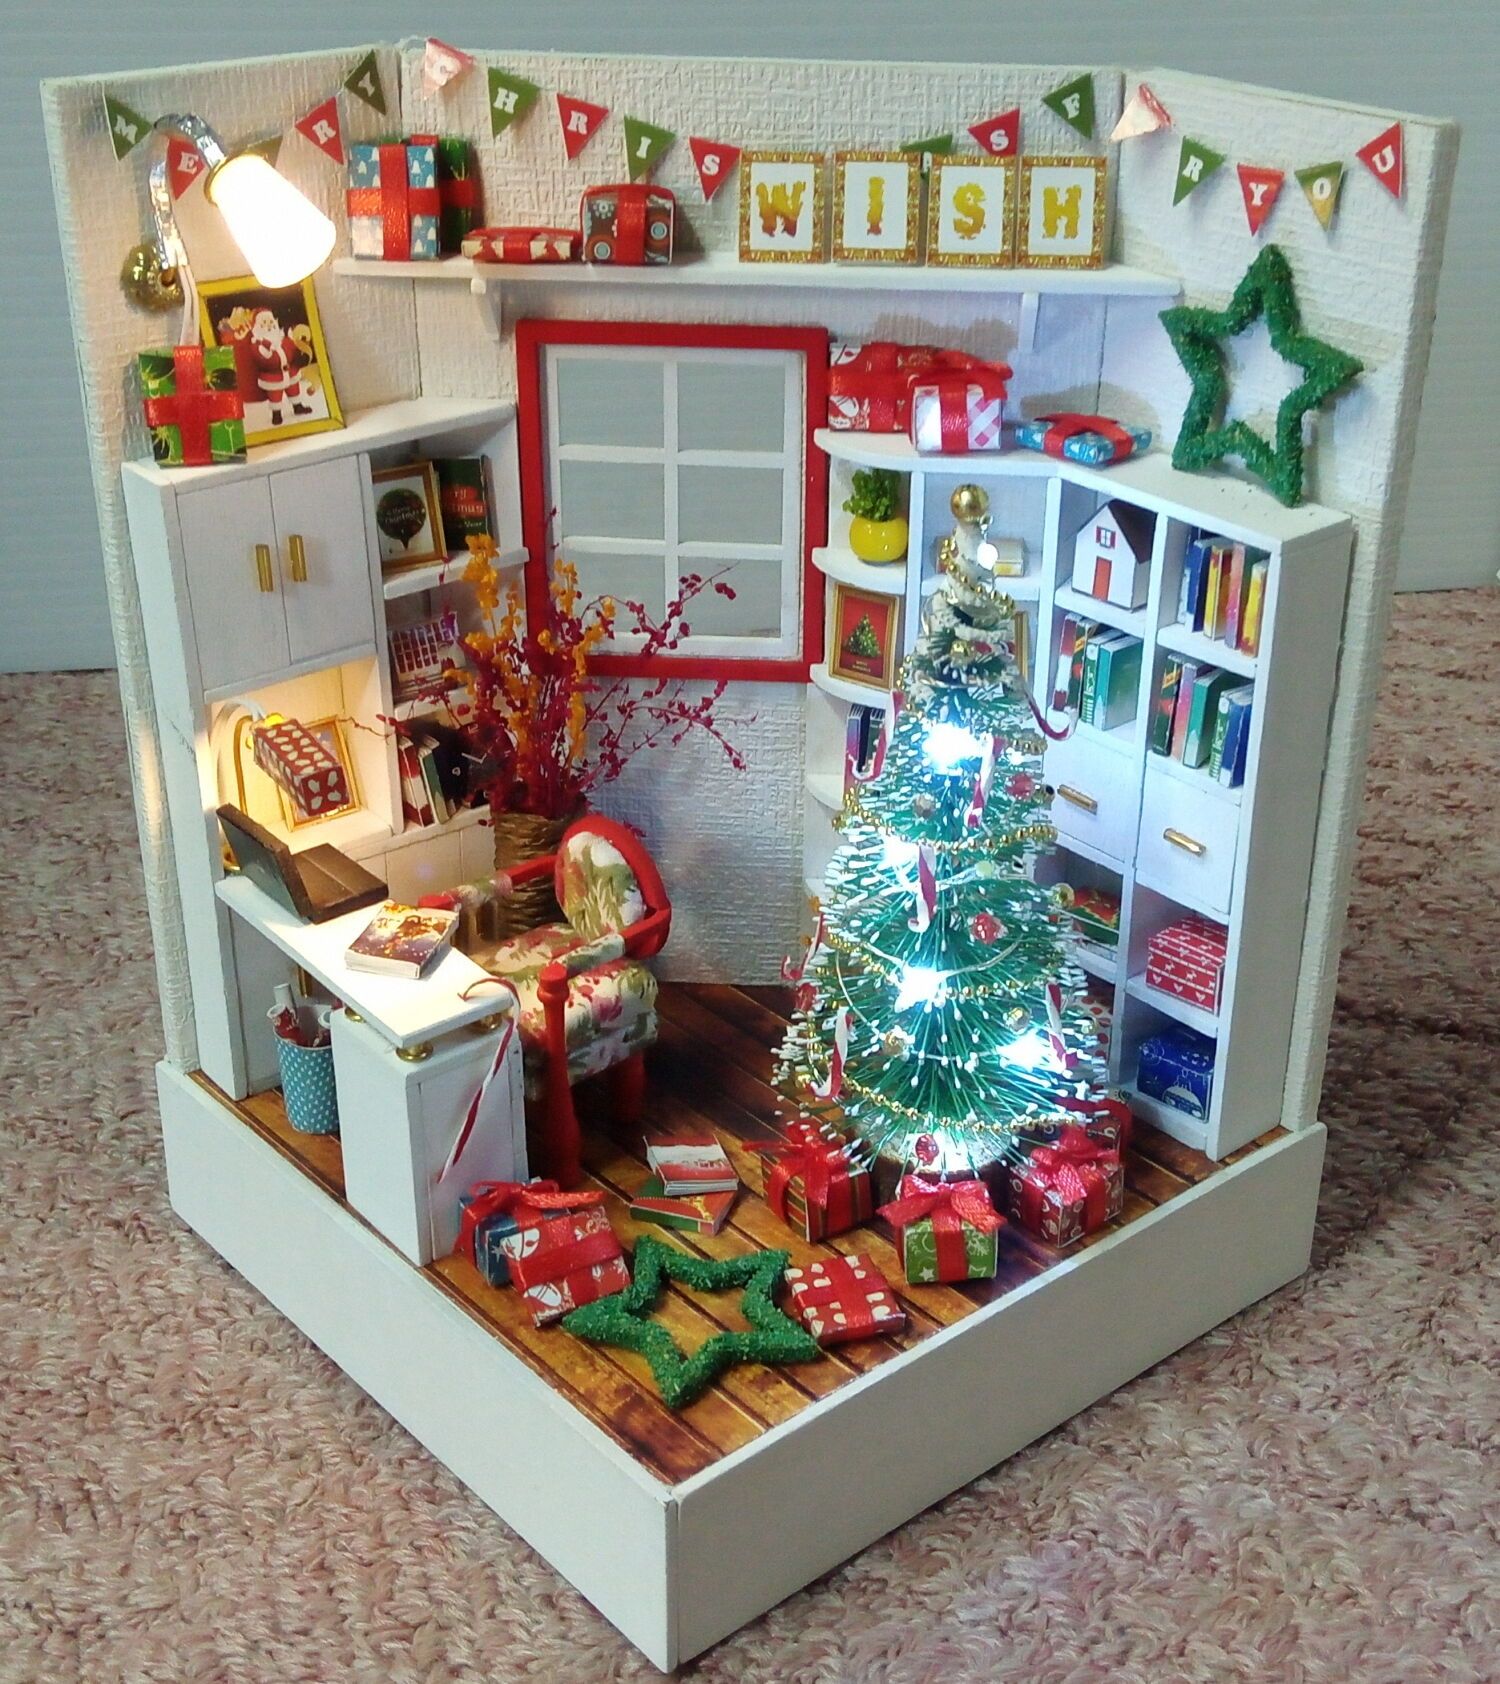 ドールハウス製作記 5個目 クリスマスルーム 完成 未完成日記 楽天ブログ